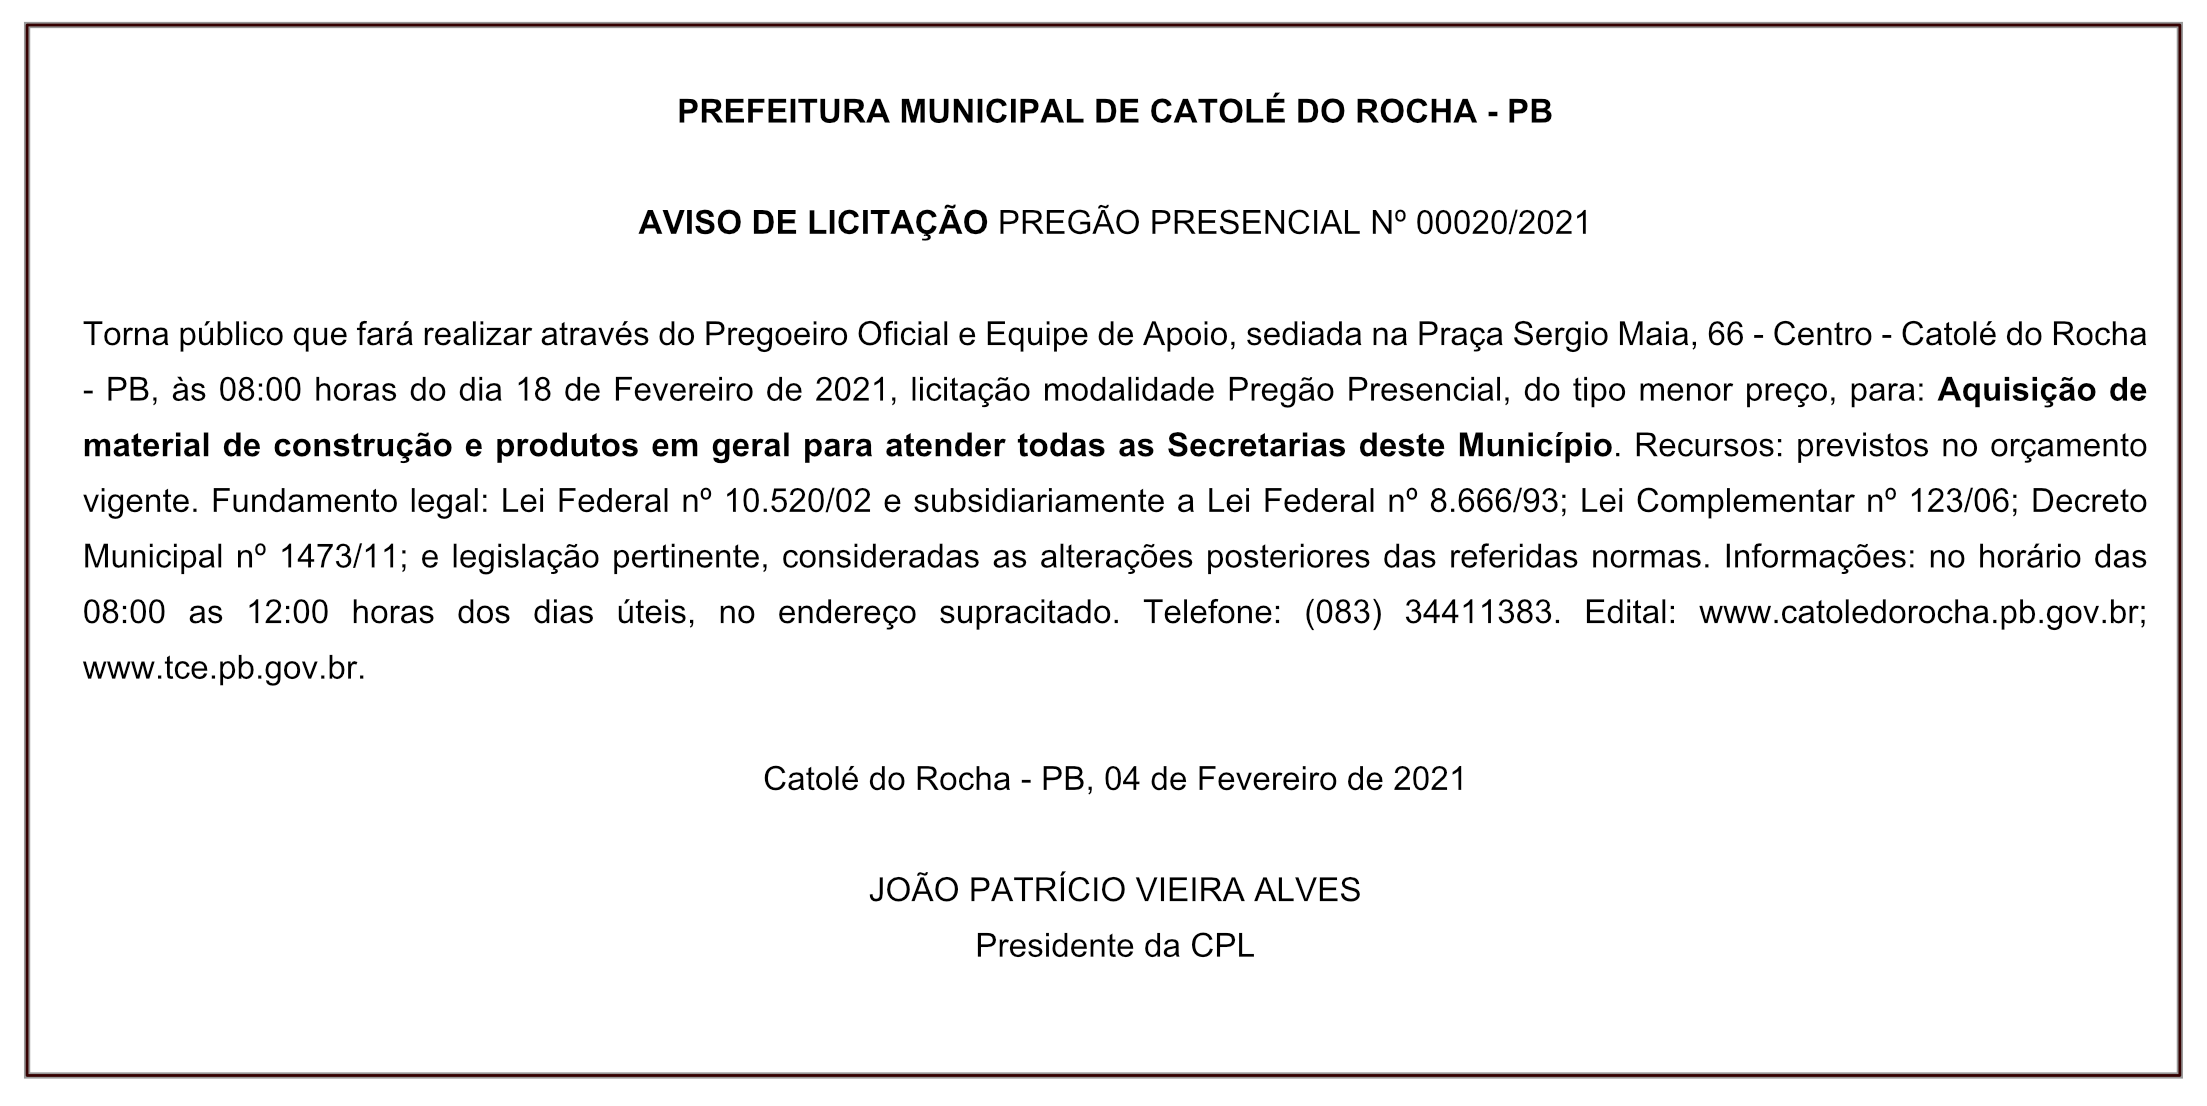 PREFEITURA MUNICIPAL DE CATOLÉ DO ROCHA – PB  AVISO DE LICITAÇÃO PREGÃO PRESENCIAL Nº 00020/2021